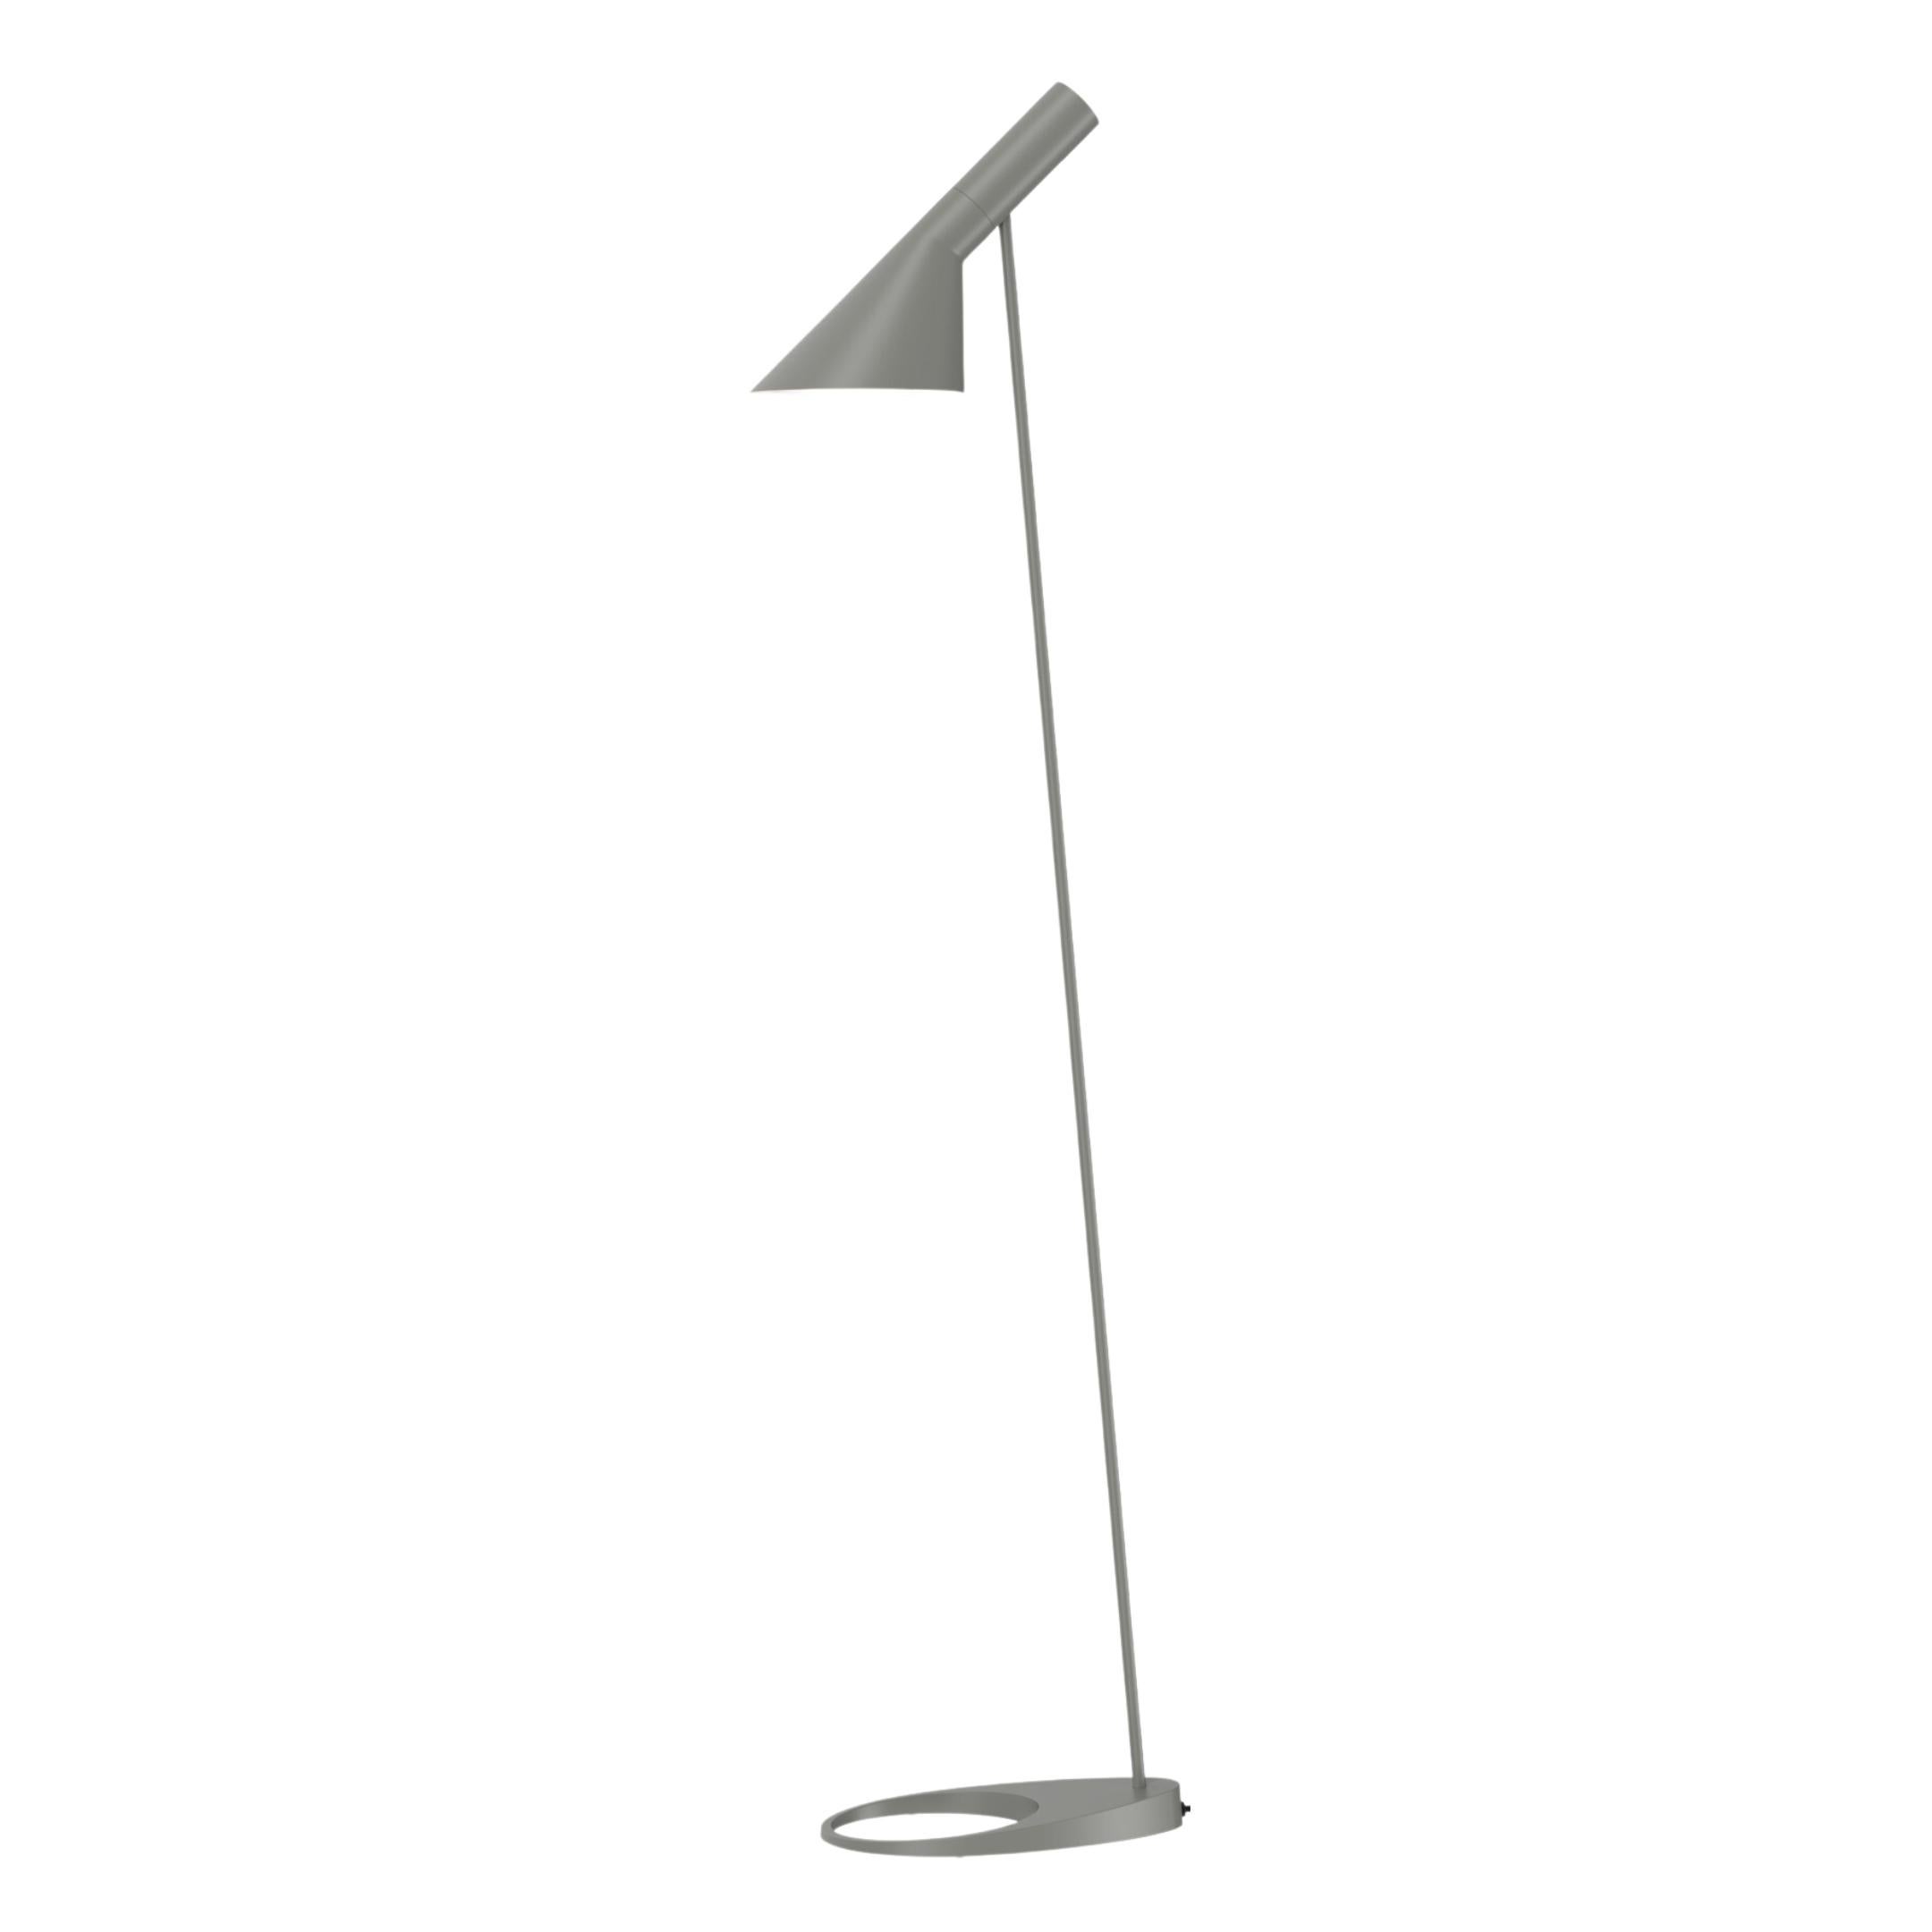 Arne Jacobsen AJ Floor Lamp in Black for Louis Poulsen For Sale 5